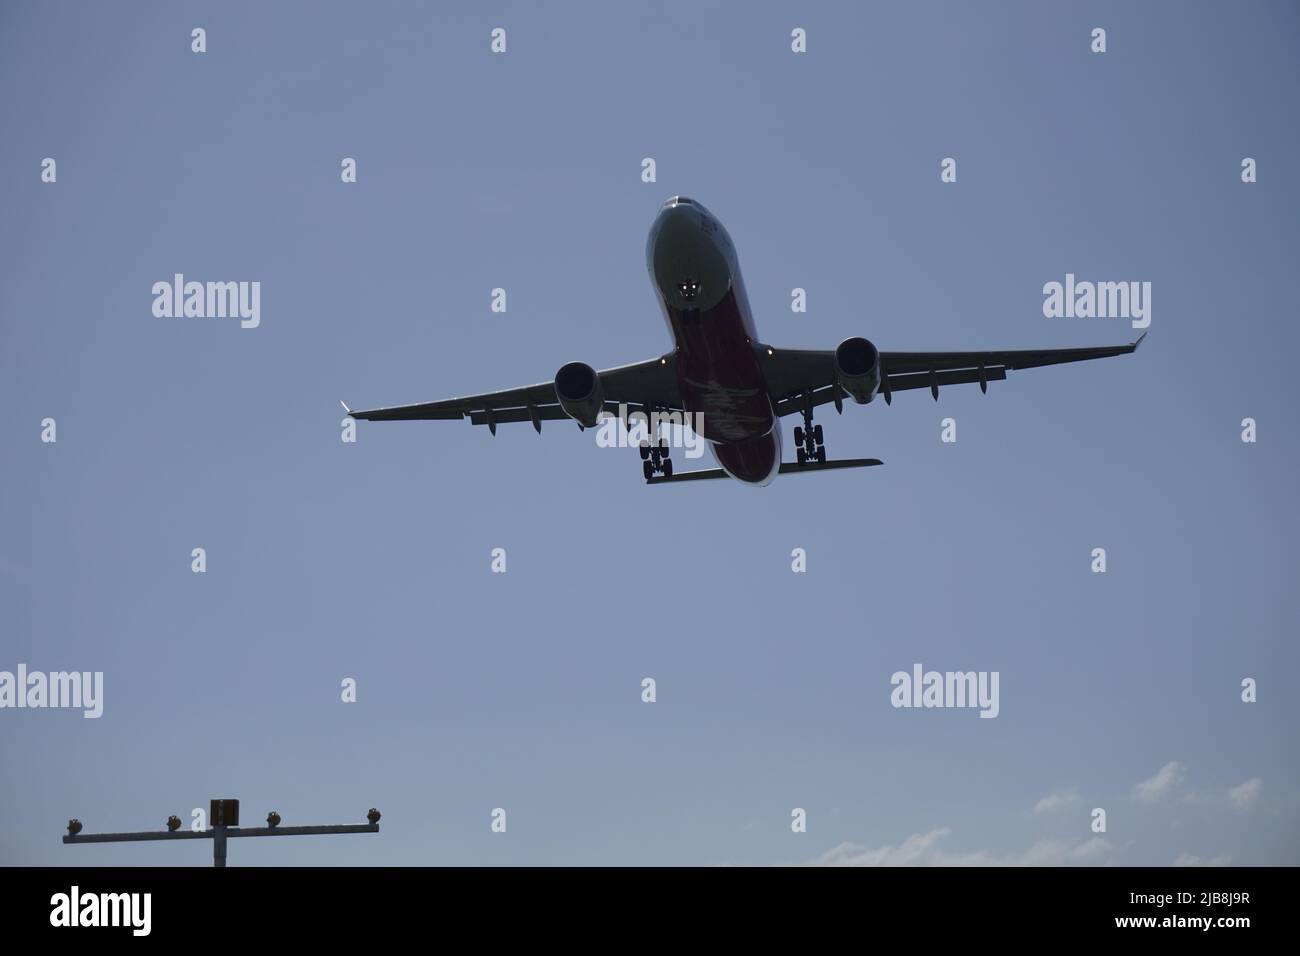 Silhouette des Flugzeuges nähert sich der Landebahn Stockfoto